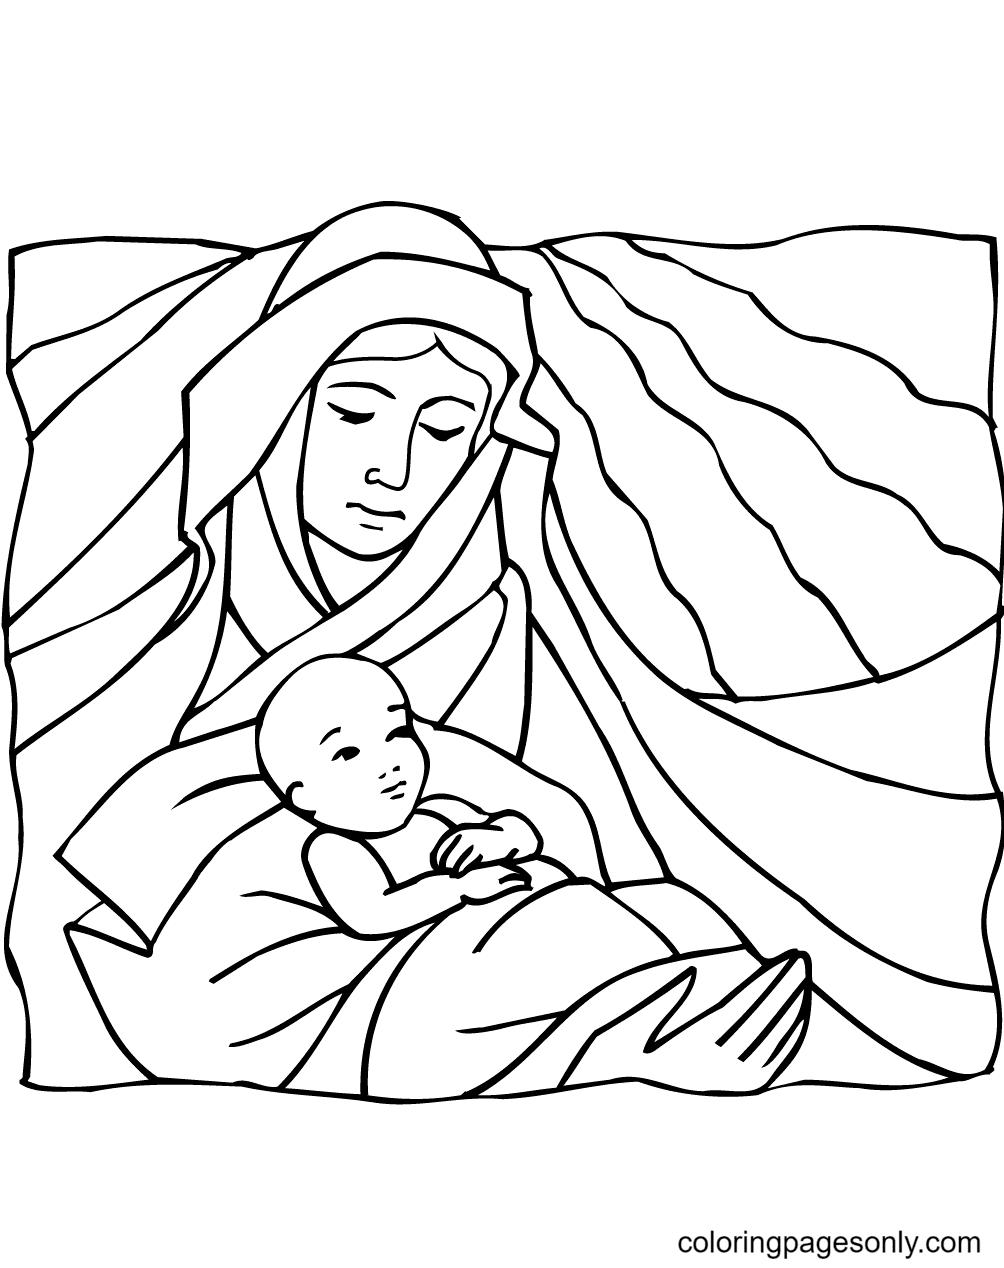 玛丽抱着婴儿耶稣从宗教圣诞节